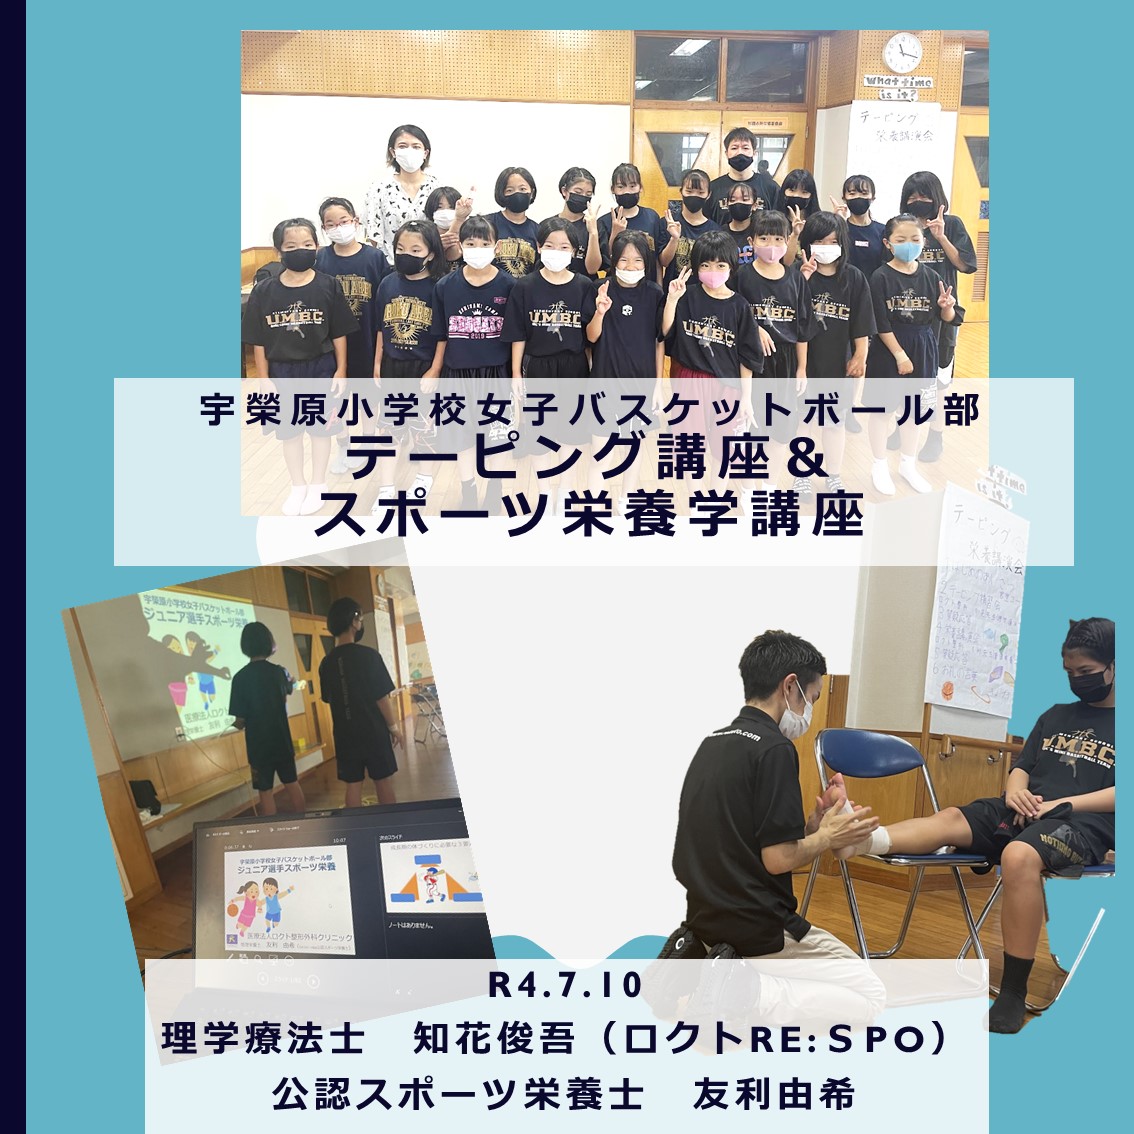 宇榮原小学校女子バスケットボール部テーピング＆スポーツ栄養講座